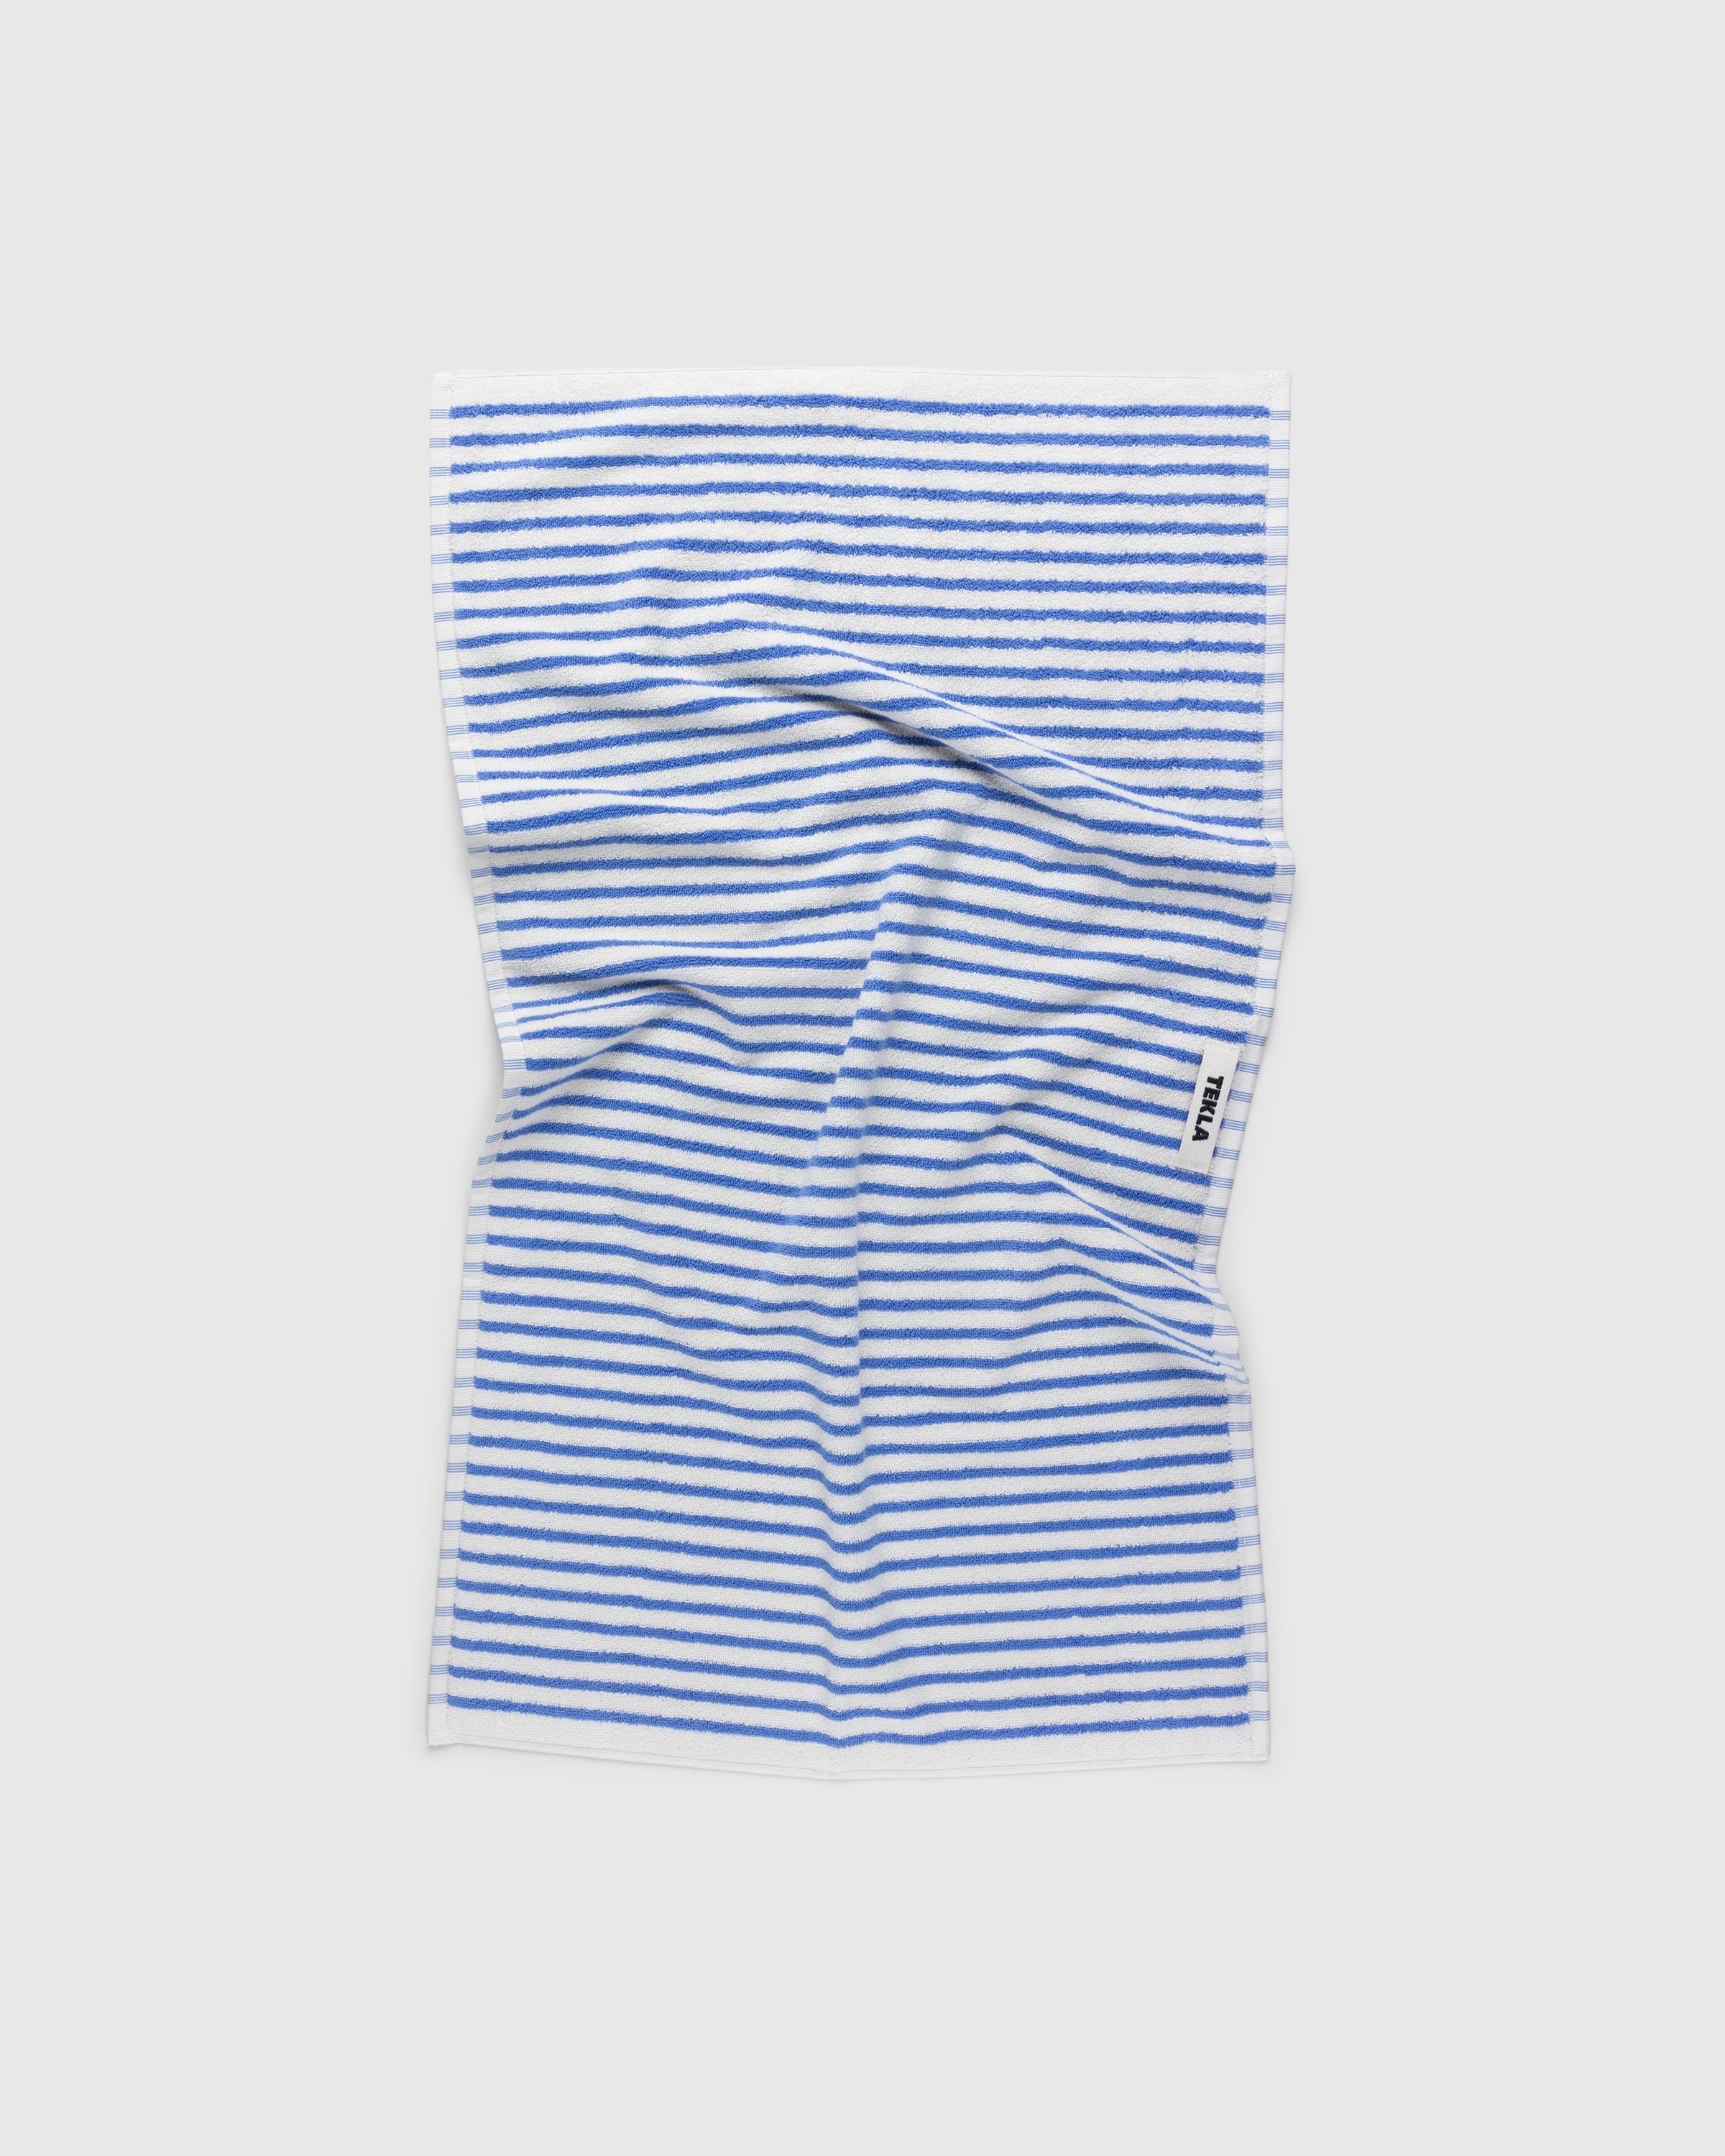 Tekla - Hand Towel Coastal Stripes - Lifestyle - Multi - Image 1